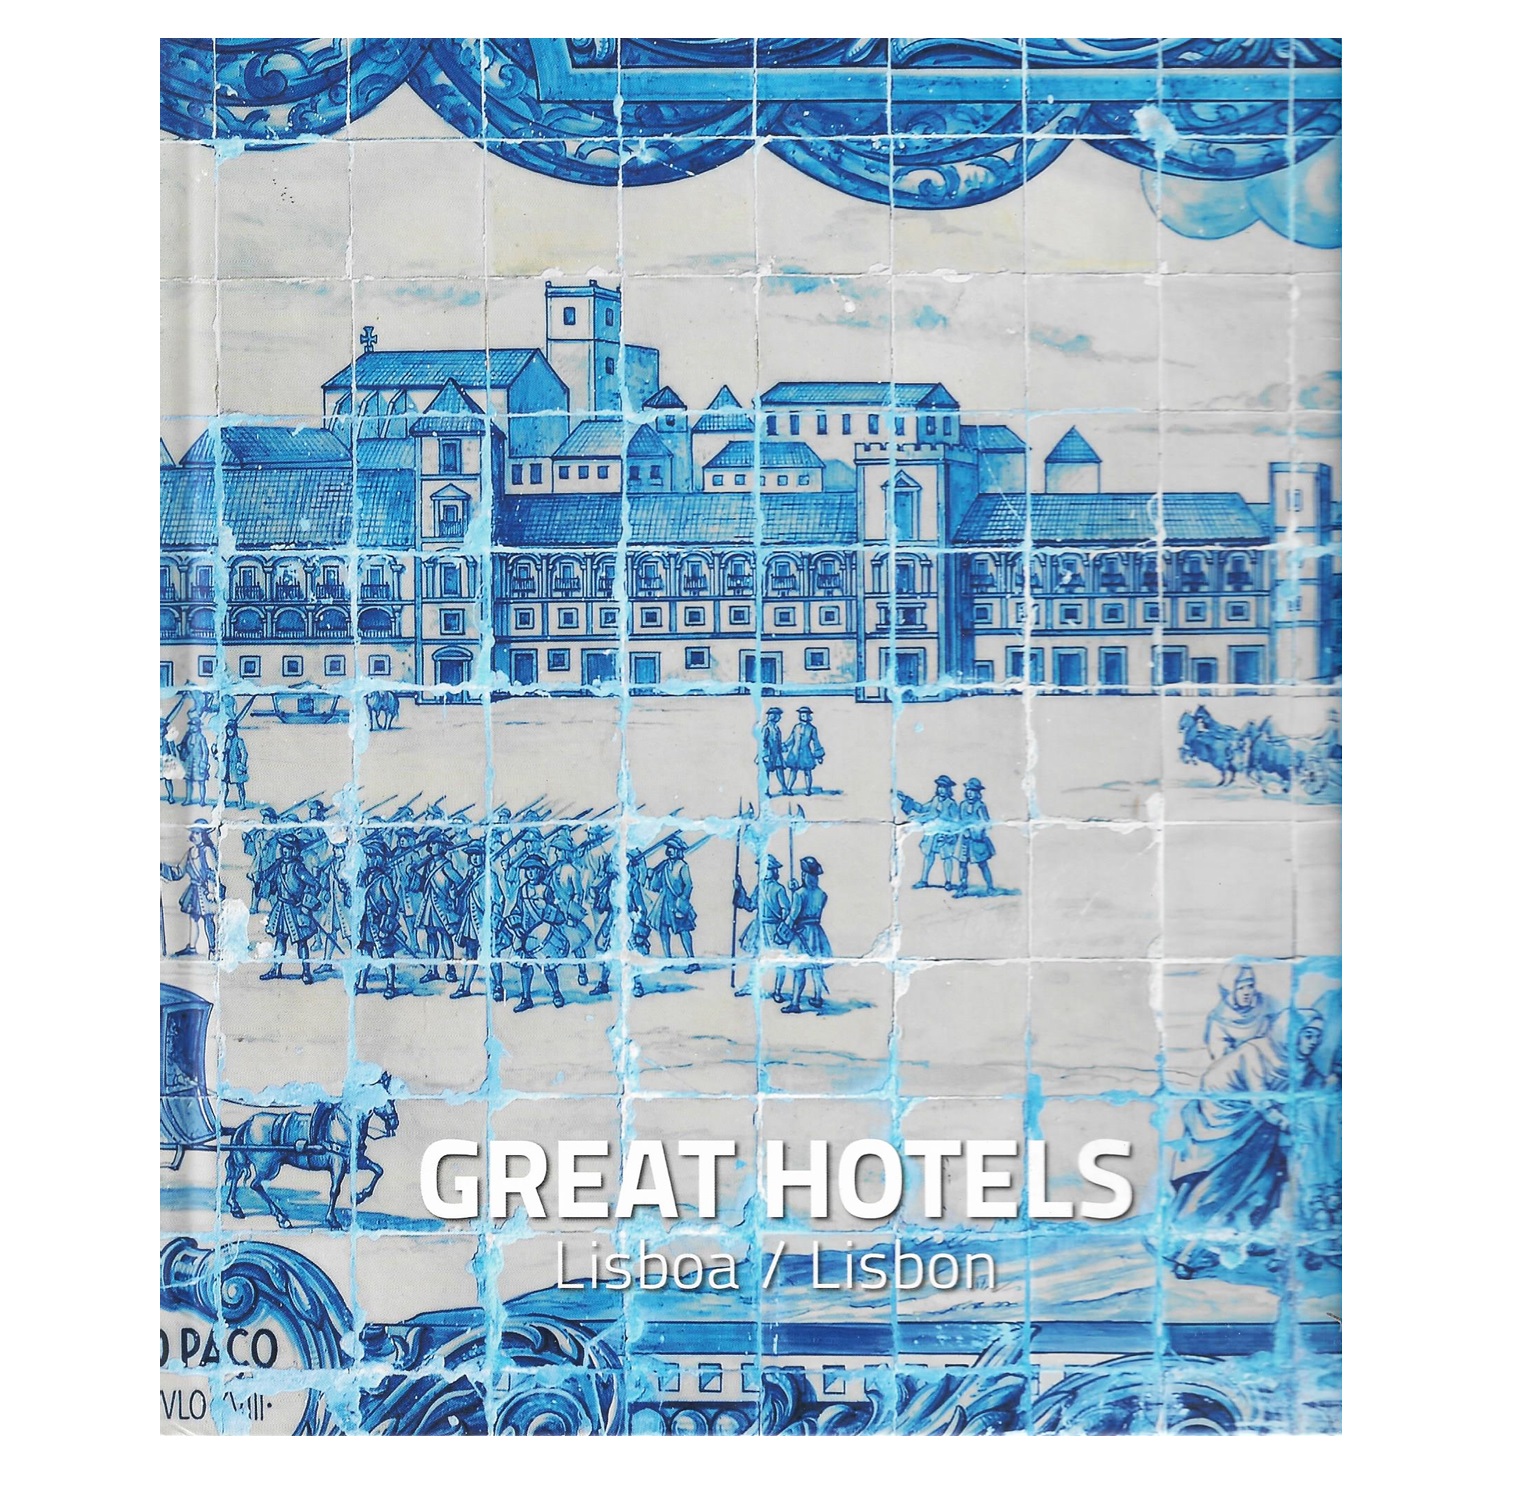  GREAT HOTELS LISBOA/LISBON